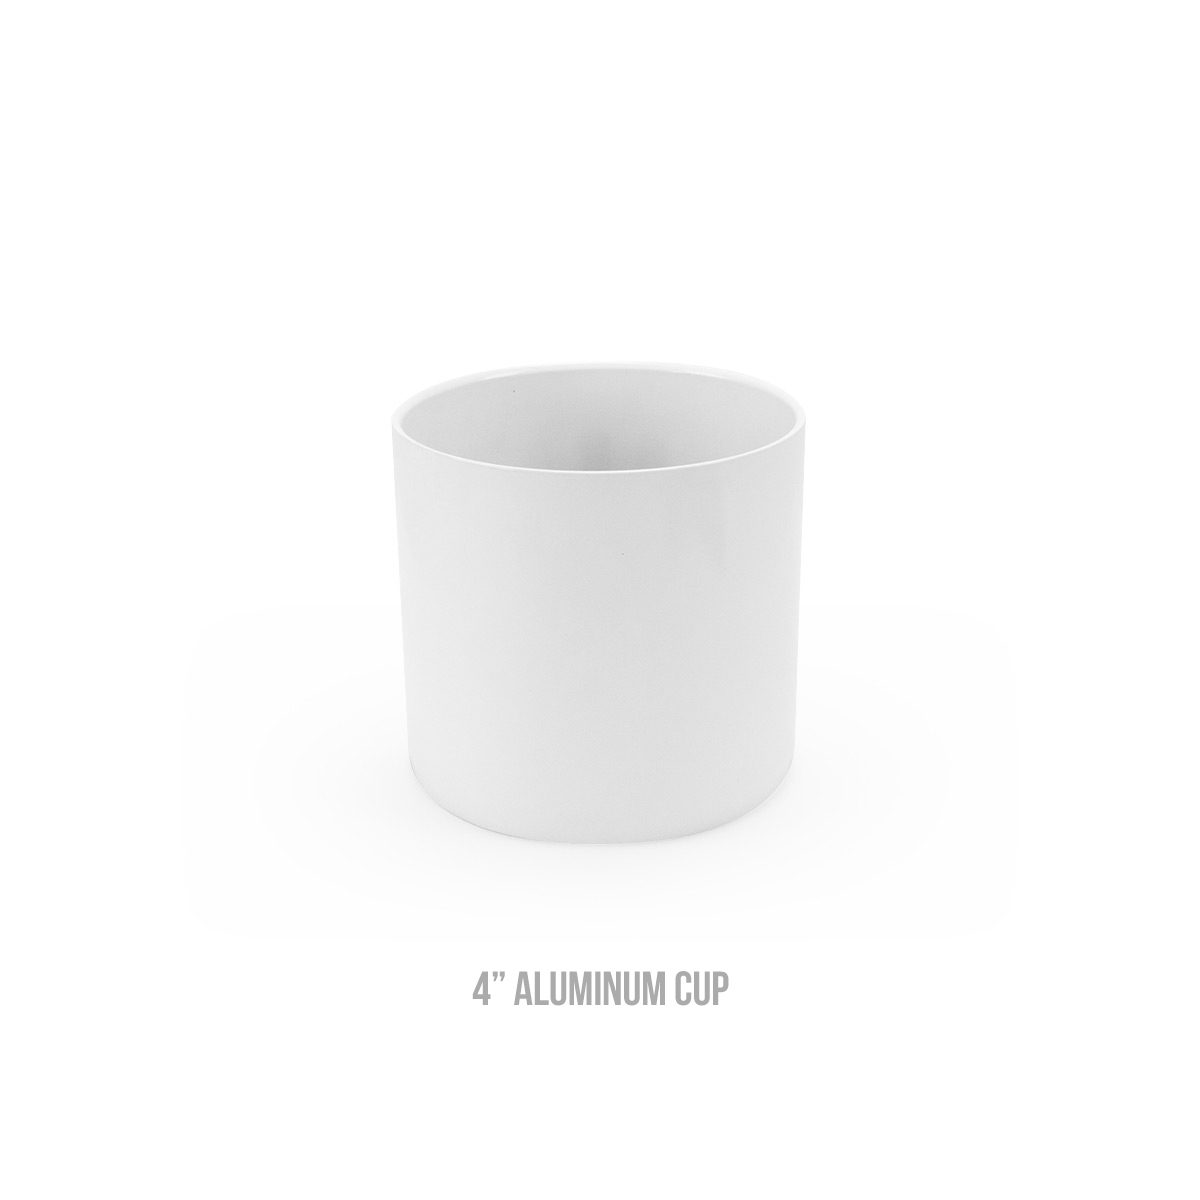 4 inch aluminum cup